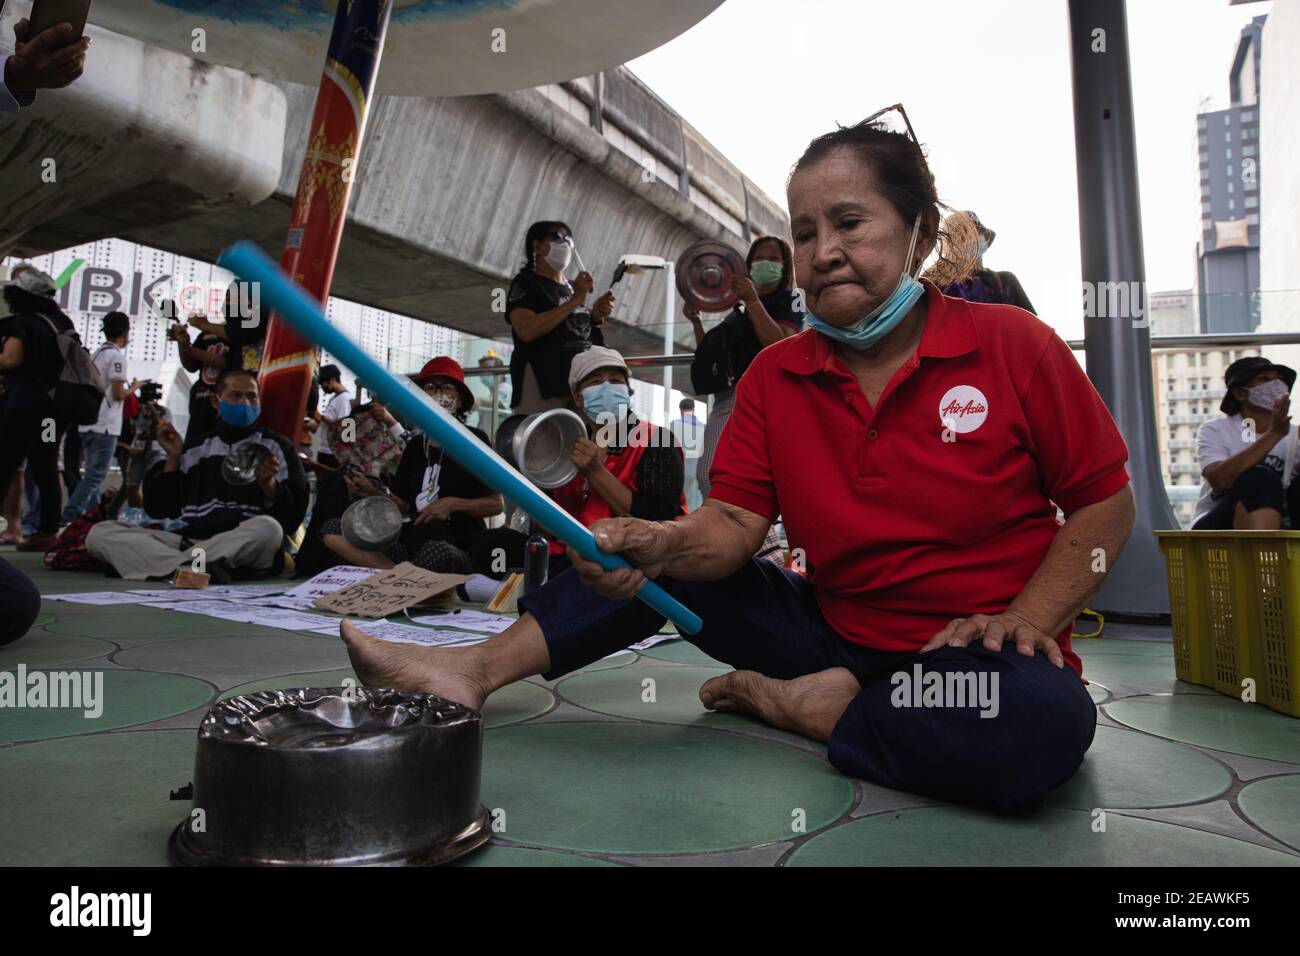 Durante la dimostrazione, un manifestante ha visto sbattere una pentola come un simbolo di "niente da mangiare". I dimostranti pro-democrazia hanno stabilito l'evento "banging contro la dittatura" sullo Skywalk di fronte al centro MBK e anche davanti al centro artistico e culturale di Bangkok (BACC). I dimostranti hanno chiesto le dimissioni del primo ministro tailandese, Prayuth Chan-ocha, e le riforme nella monarchia. Dopo che gli agenti di polizia hanno arrestato 10 dimostranti sotto varie accuse quali il mantenimento della legge sulla sanità pubblica e l'ordine e la legge sul controllo degli armamenti. I dimostranti hanno marciato verso Pathumwan pol Foto Stock